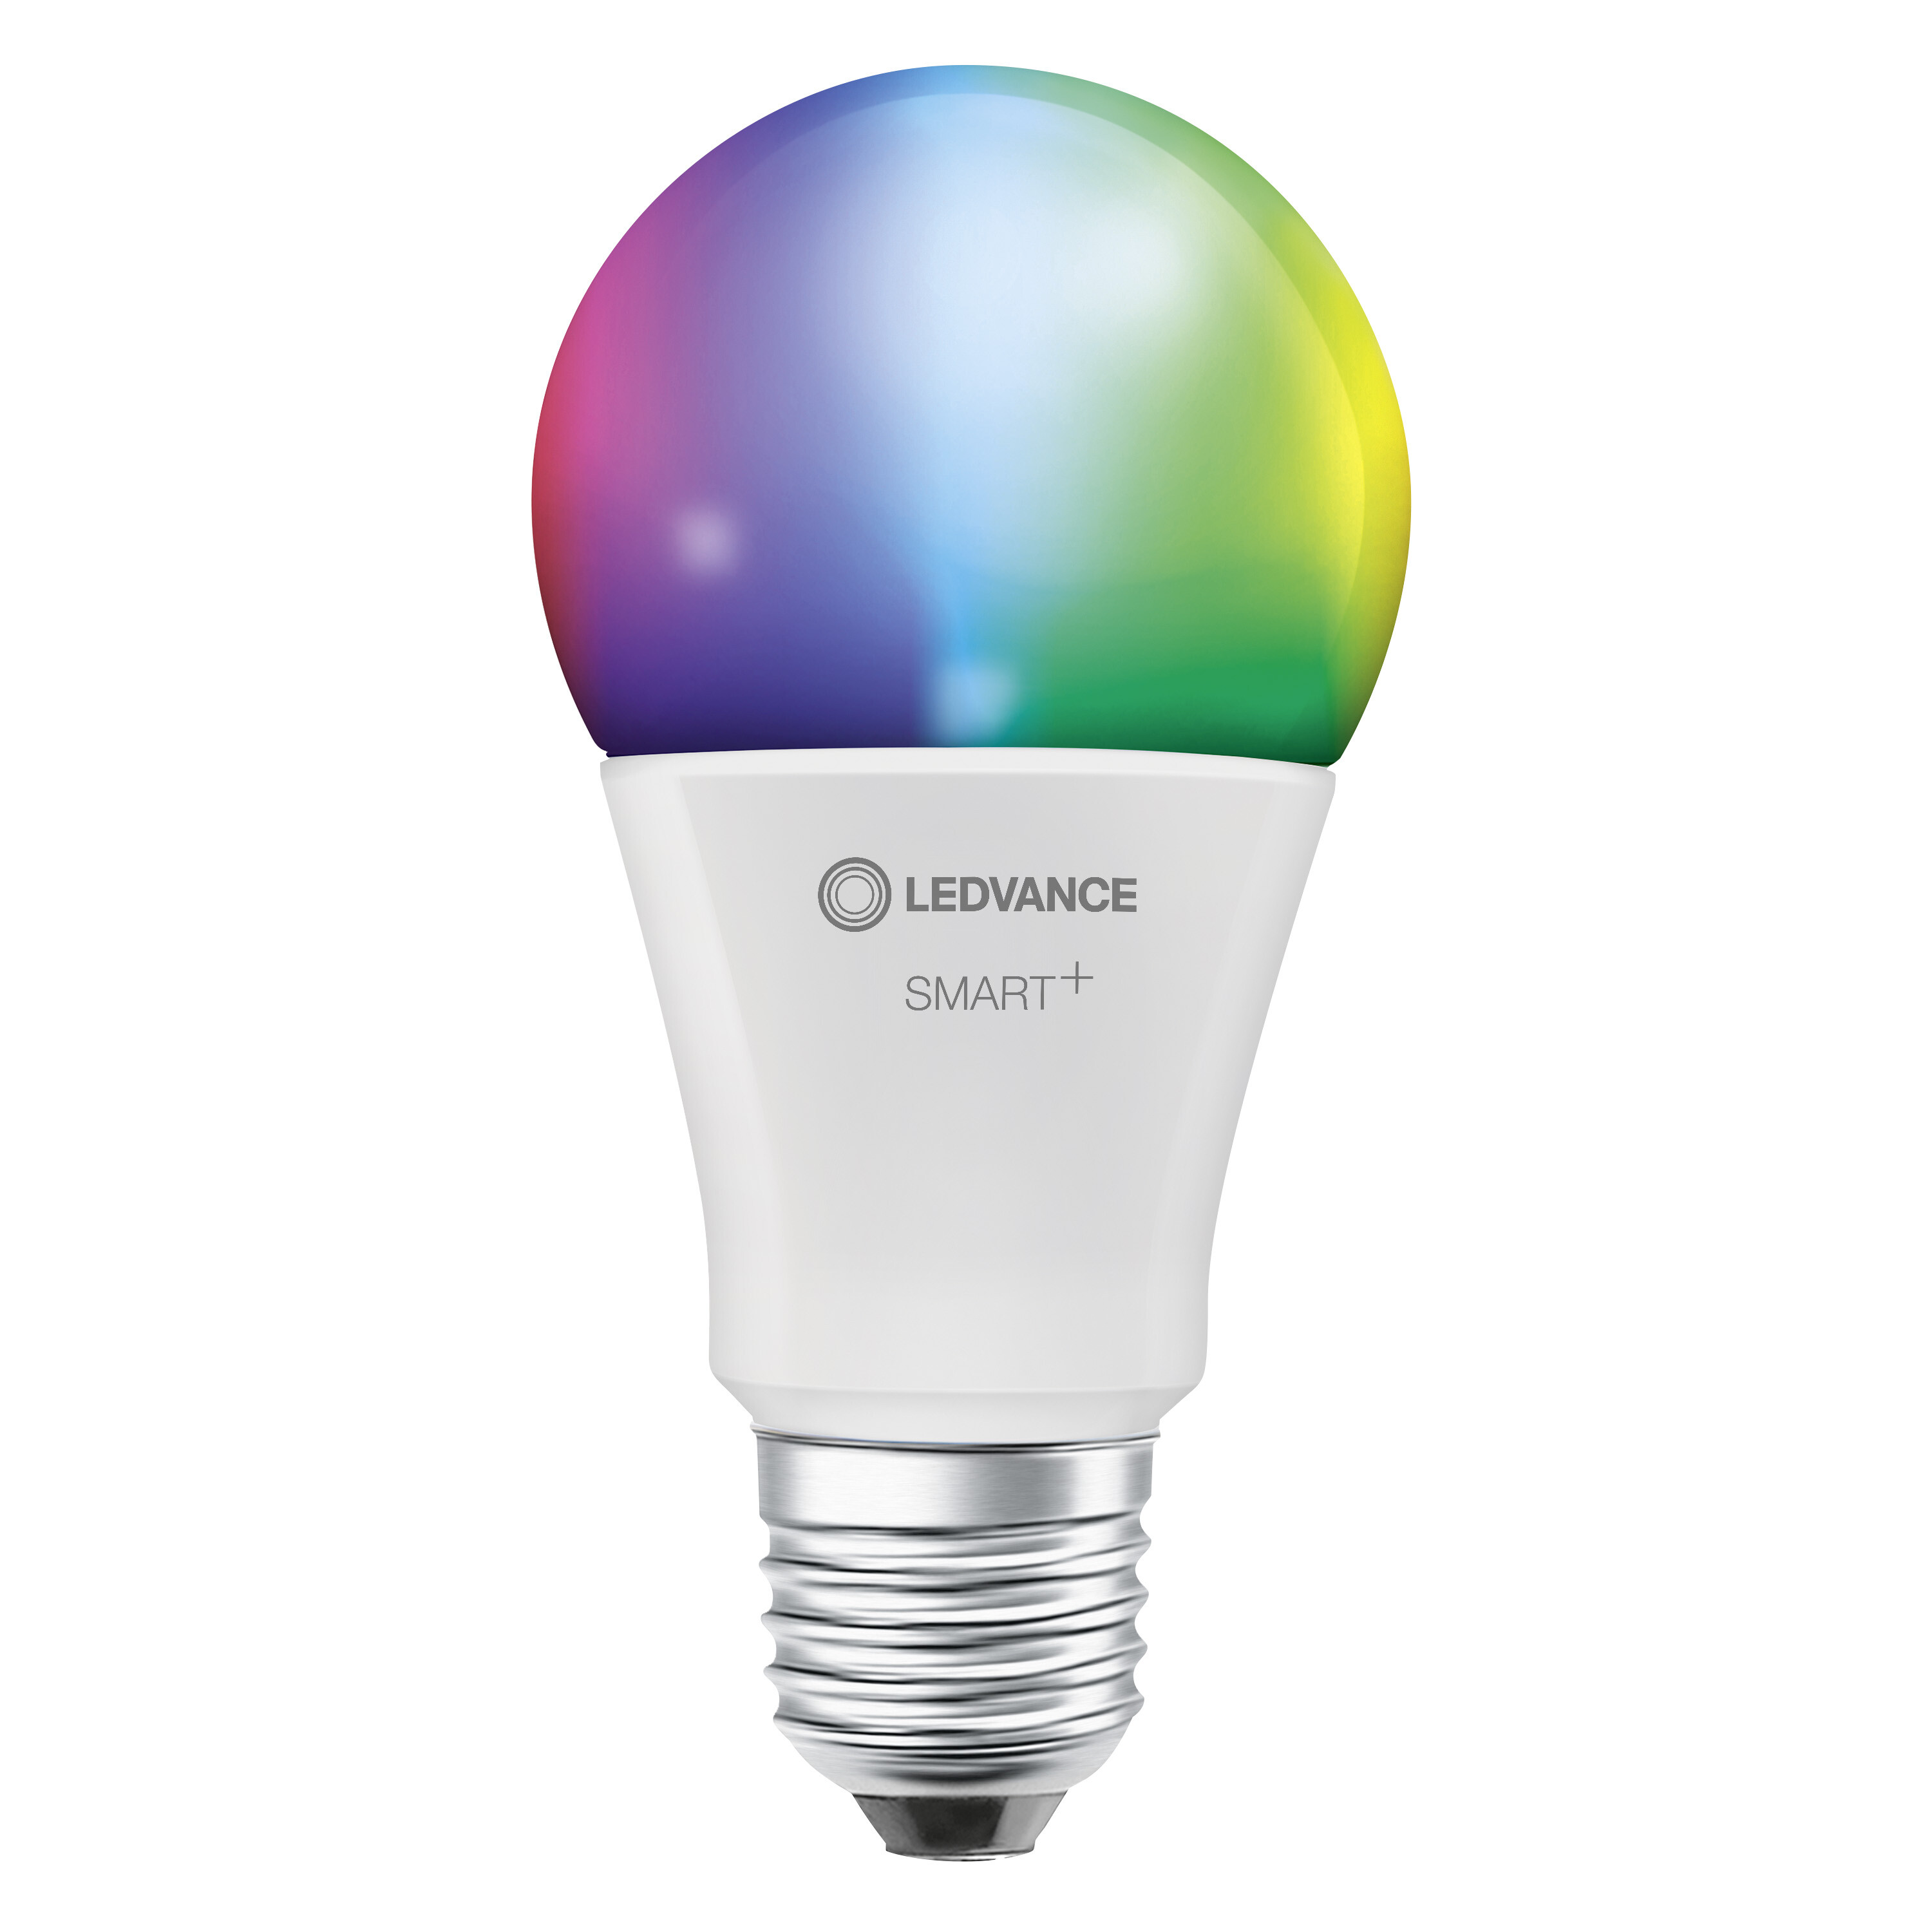 Classic LEDVANCE Lampe WiFi SMART+ RGBW LED